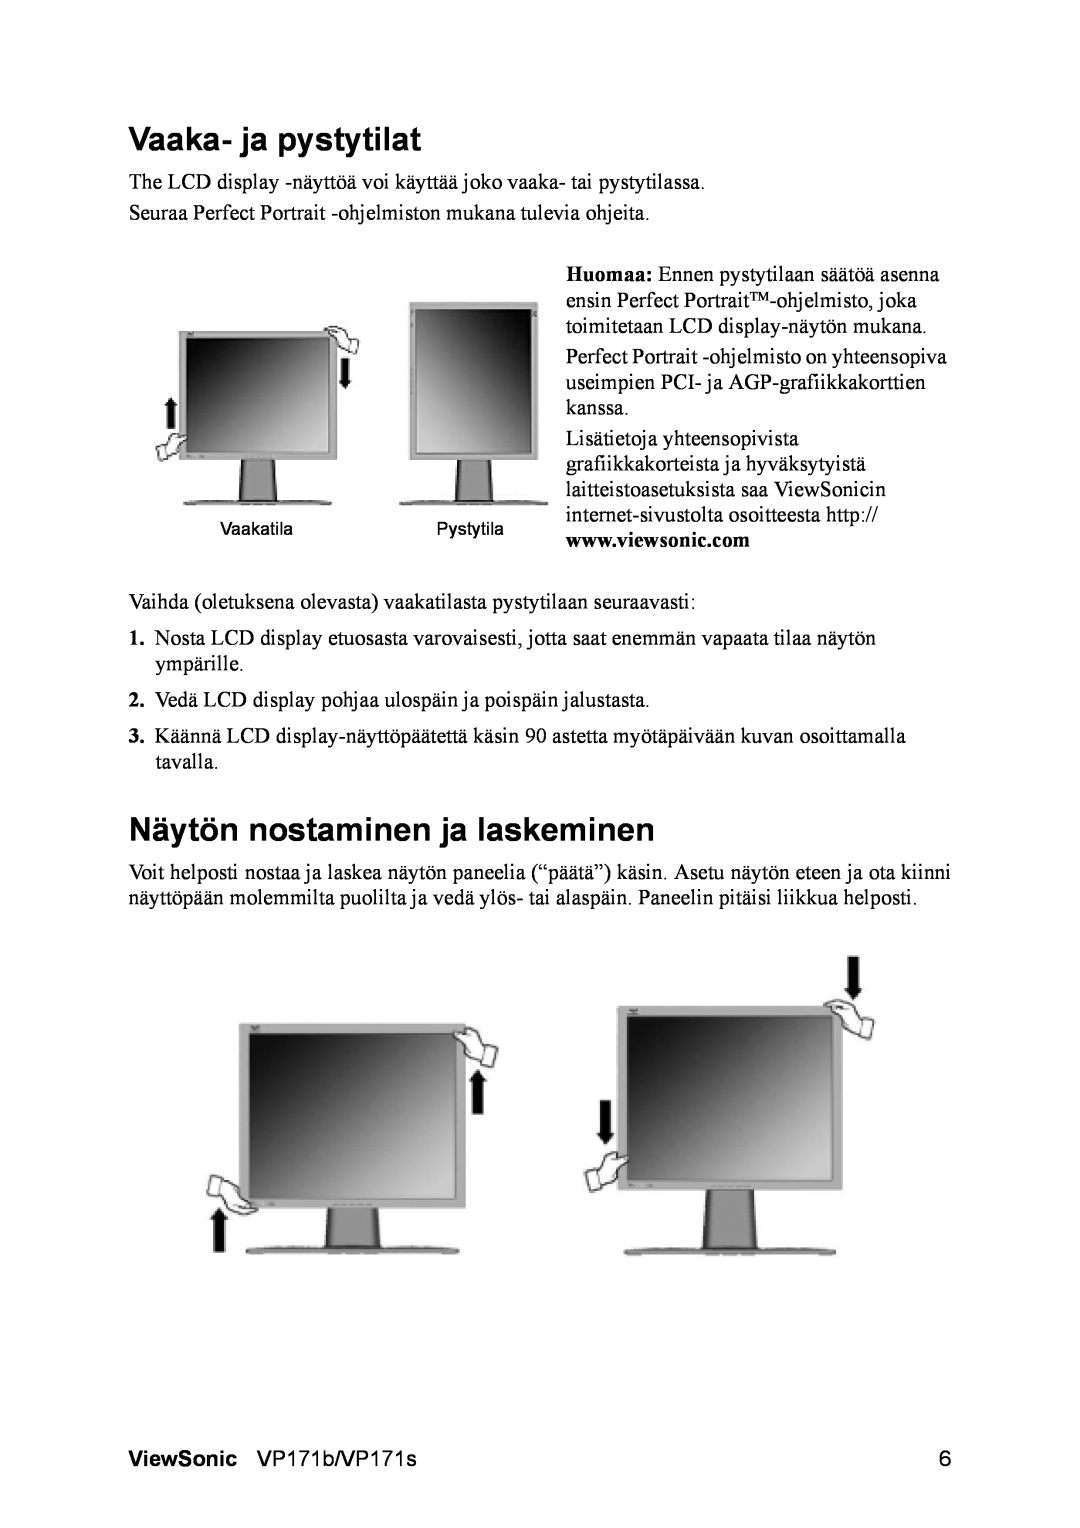 ViewSonic VP171b/VP171s manual Vaaka- ja pystytilat, Näytön nostaminen ja laskeminen 